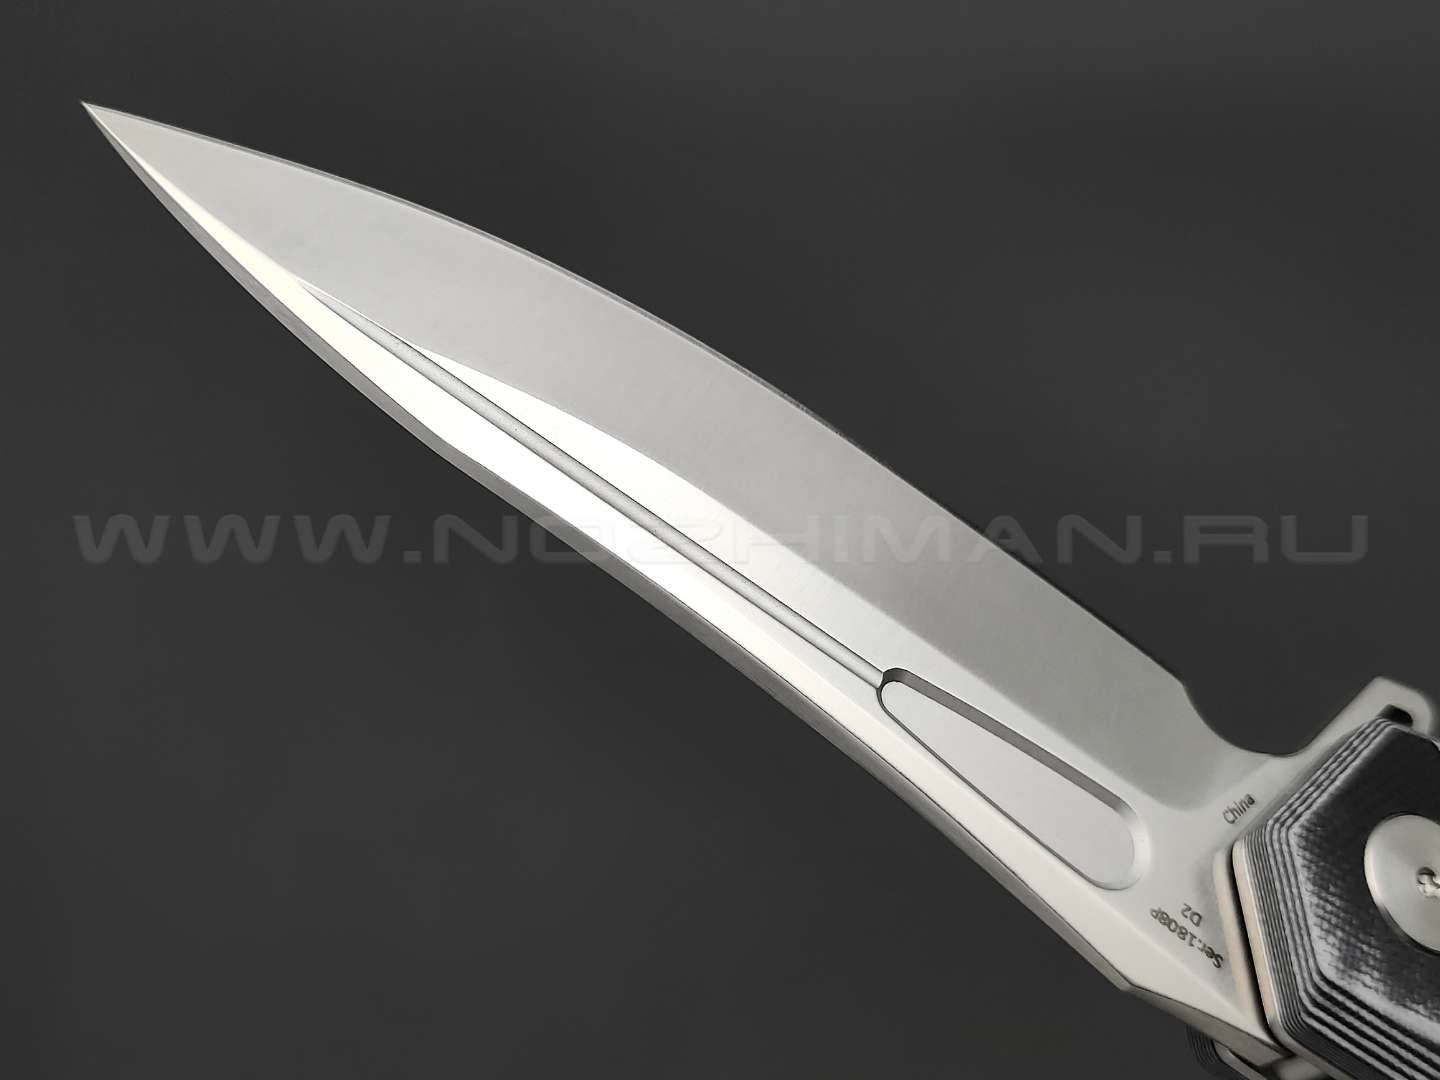 Нож Artisan Cutlery 1808P-BGC Zumwalt сталь D2, рукоять G10 black & white